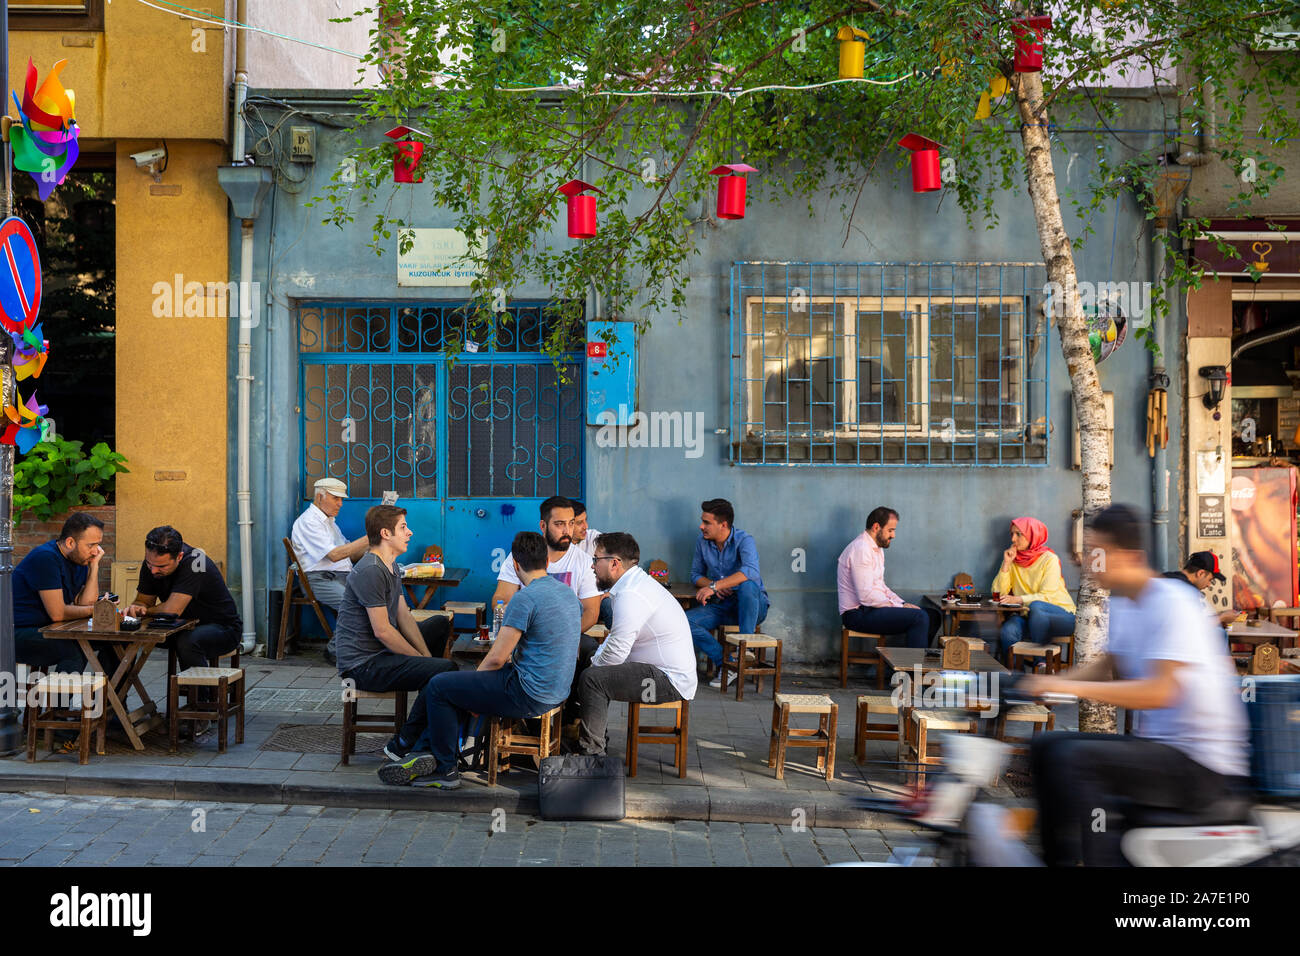 Türkische Menschen verbringen Zeit in Straßencafés in Kuzguncuk. Kuzguncuk ist ein Stadtteil im Uskudar Stadtteil auf der asiatischen Seite des Bosporus. Stockfoto